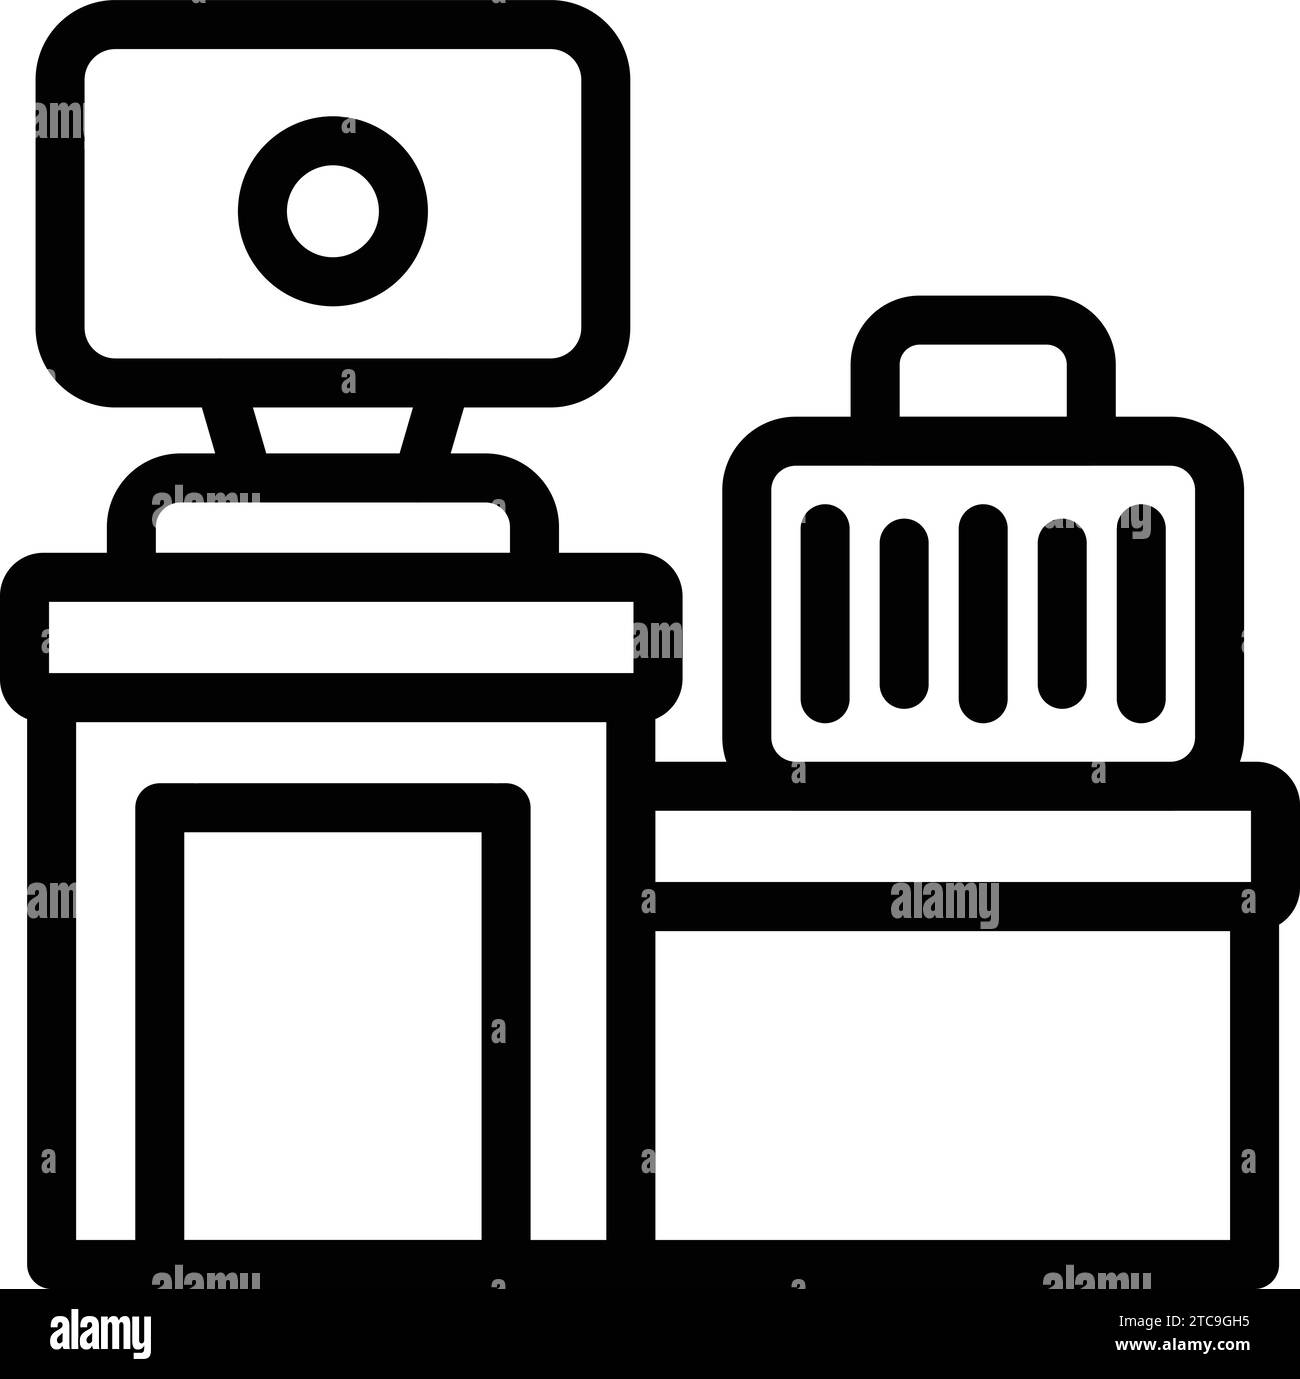 Konturvektor des Symbols für die Gepäcküberprüfung. Gepäckscanner am Flughafen. Fahrsteuerung Beifahrerseite Stock Vektor